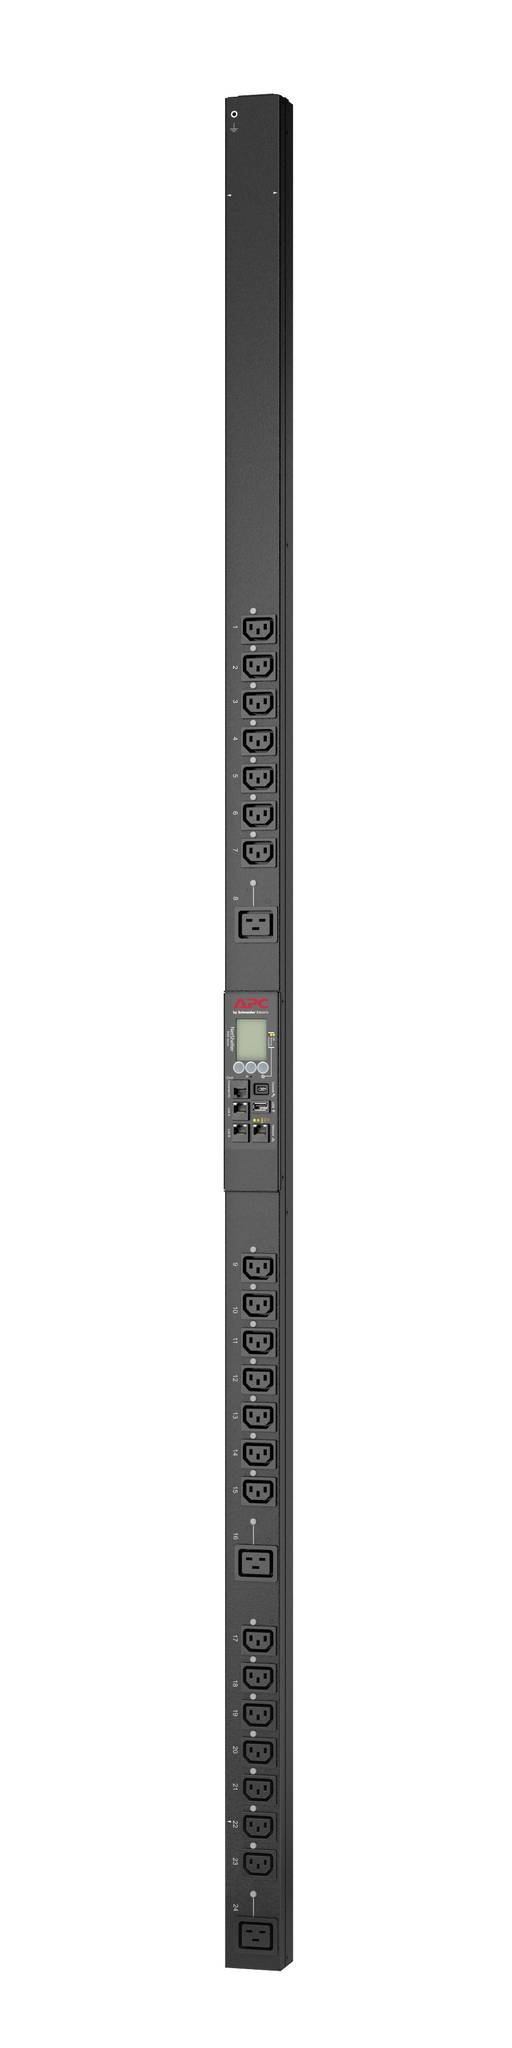 Rca Informatique - Image du produit : RACK PDU 9000 SWITCHED ZEROU 16A 230V C13 C19 IEC309 CORD